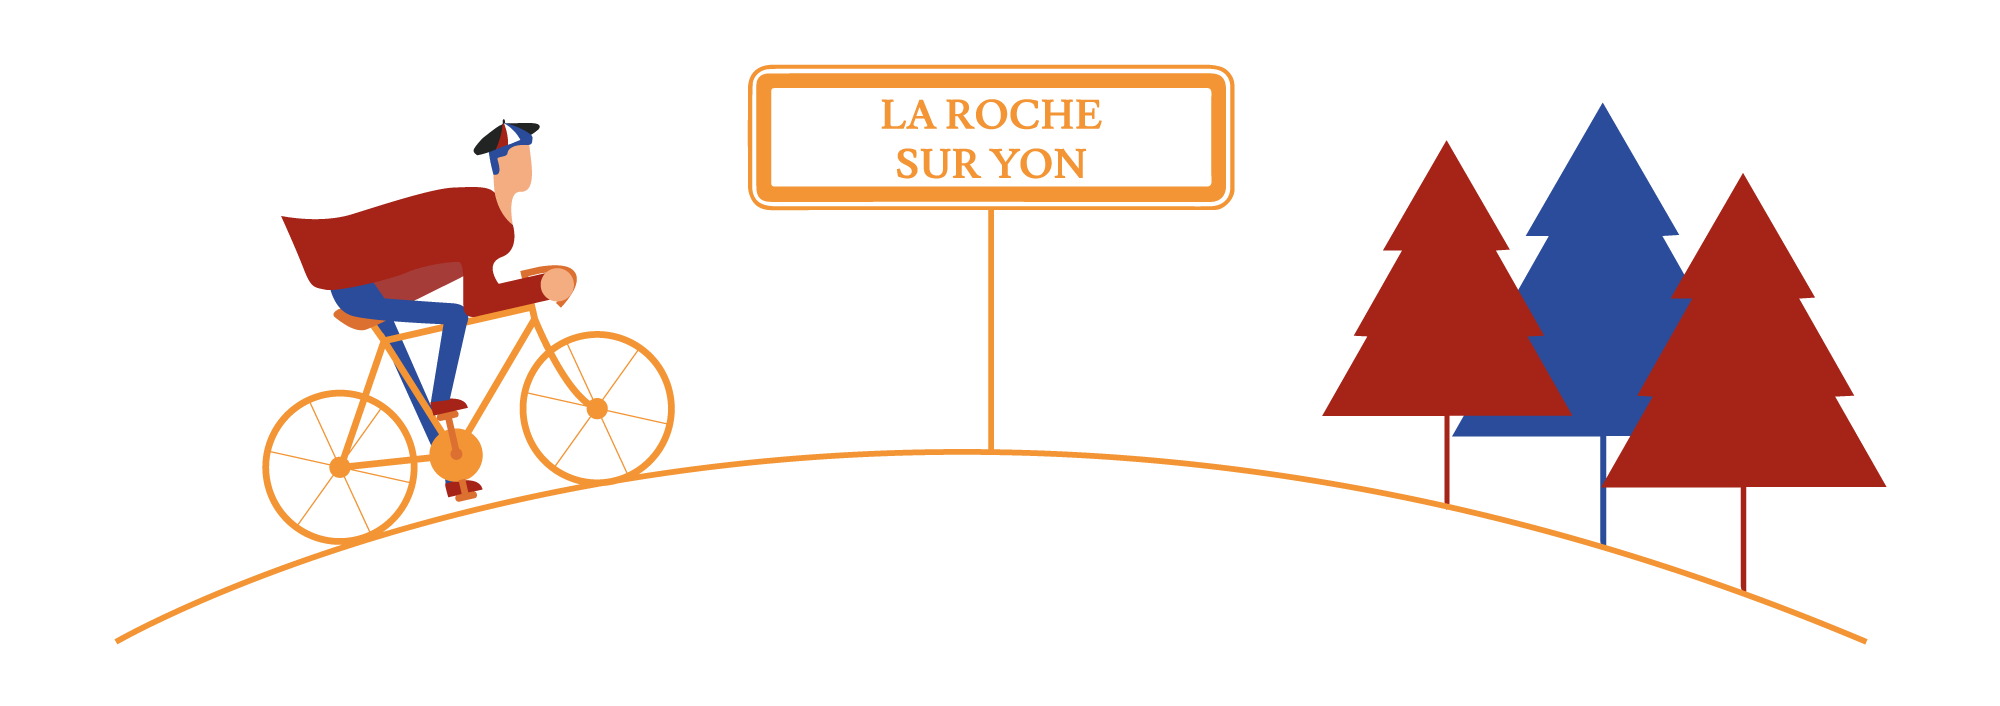 Spécialités de La-Roche-sur-Yon